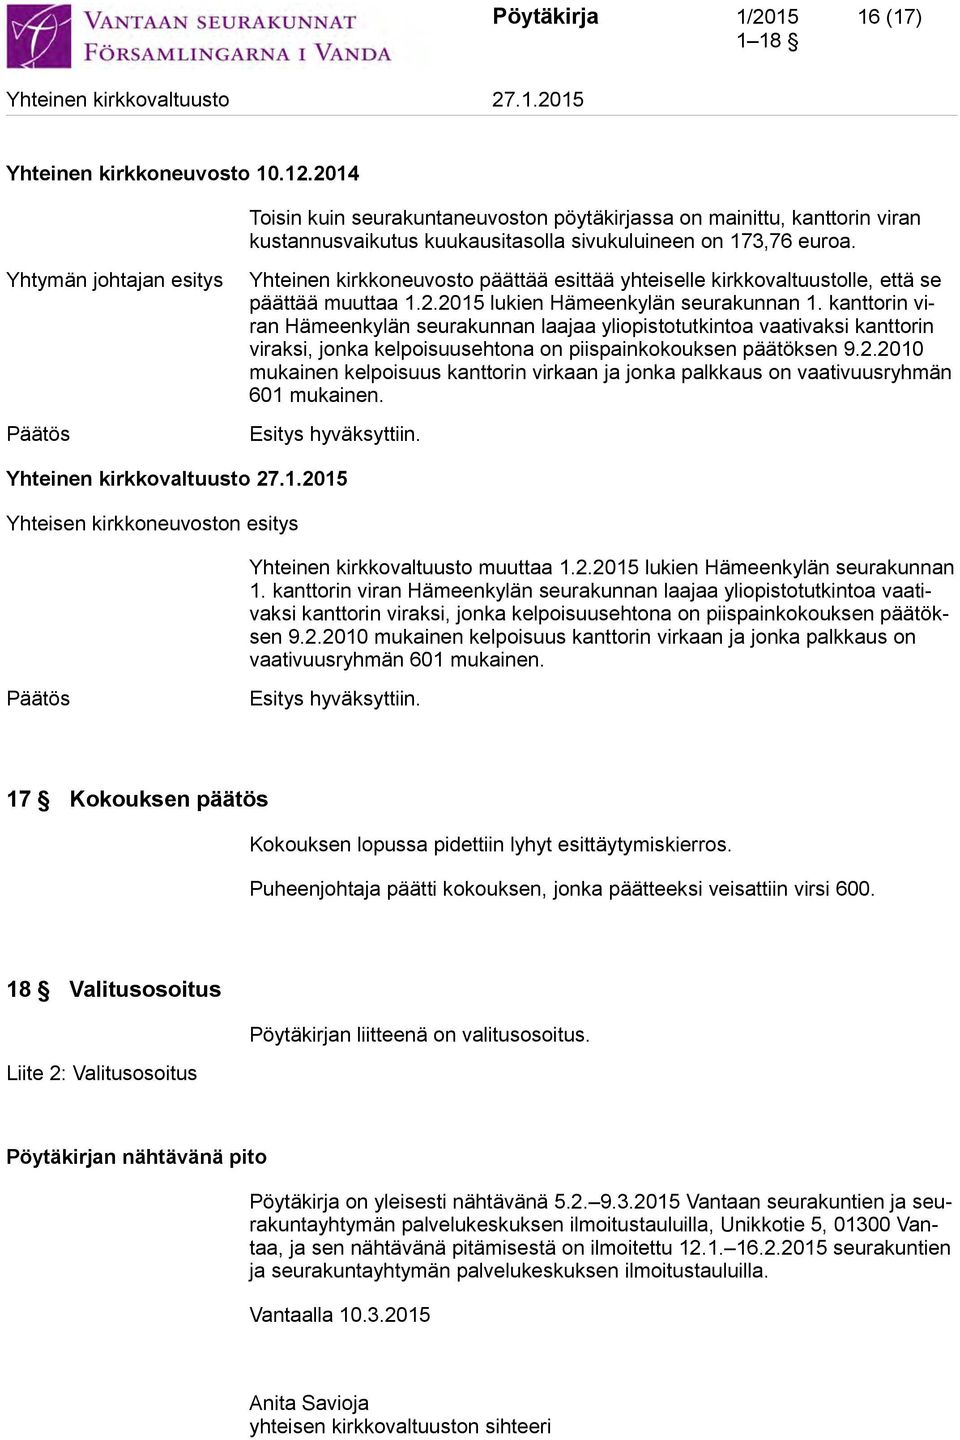 kanttorin viran Hämeenkylän seurakunnan laajaa yliopistotutkintoa vaativaksi kanttorin viraksi, jonka kelpoisuusehtona on piispainkokouksen päätöksen 9.2.